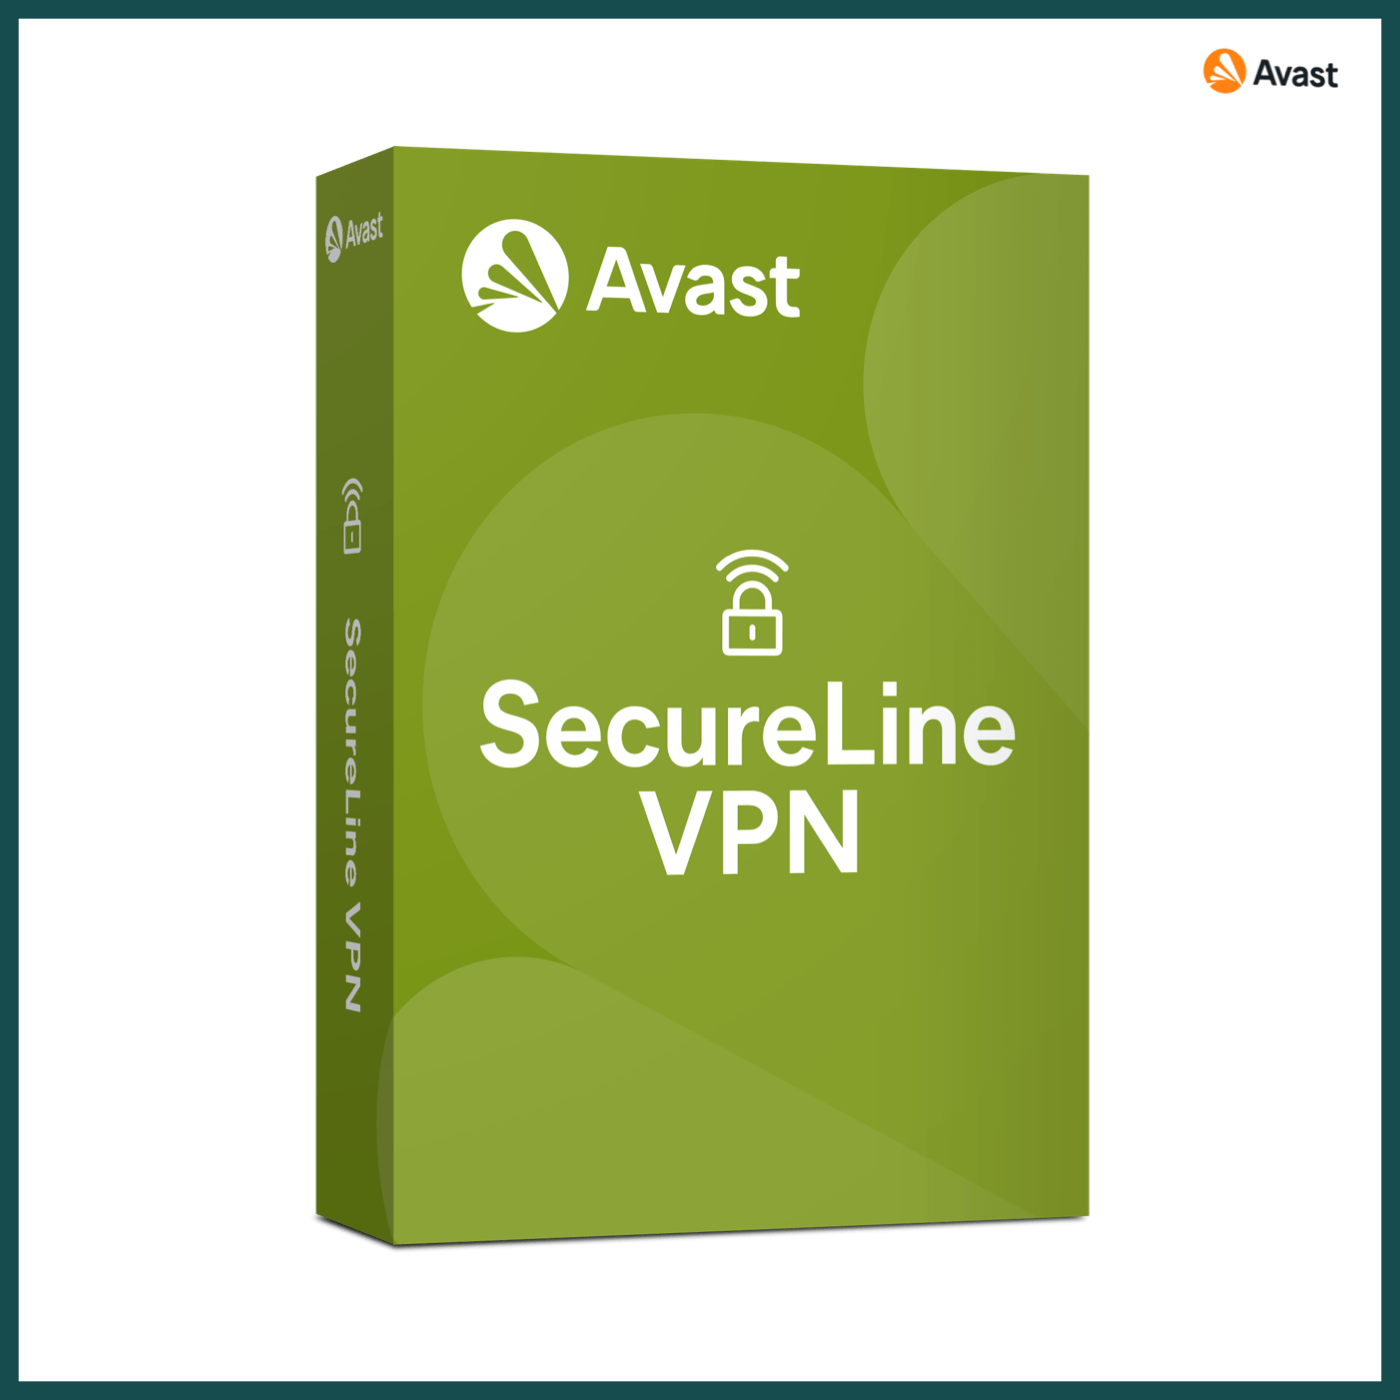 Avast Secure line